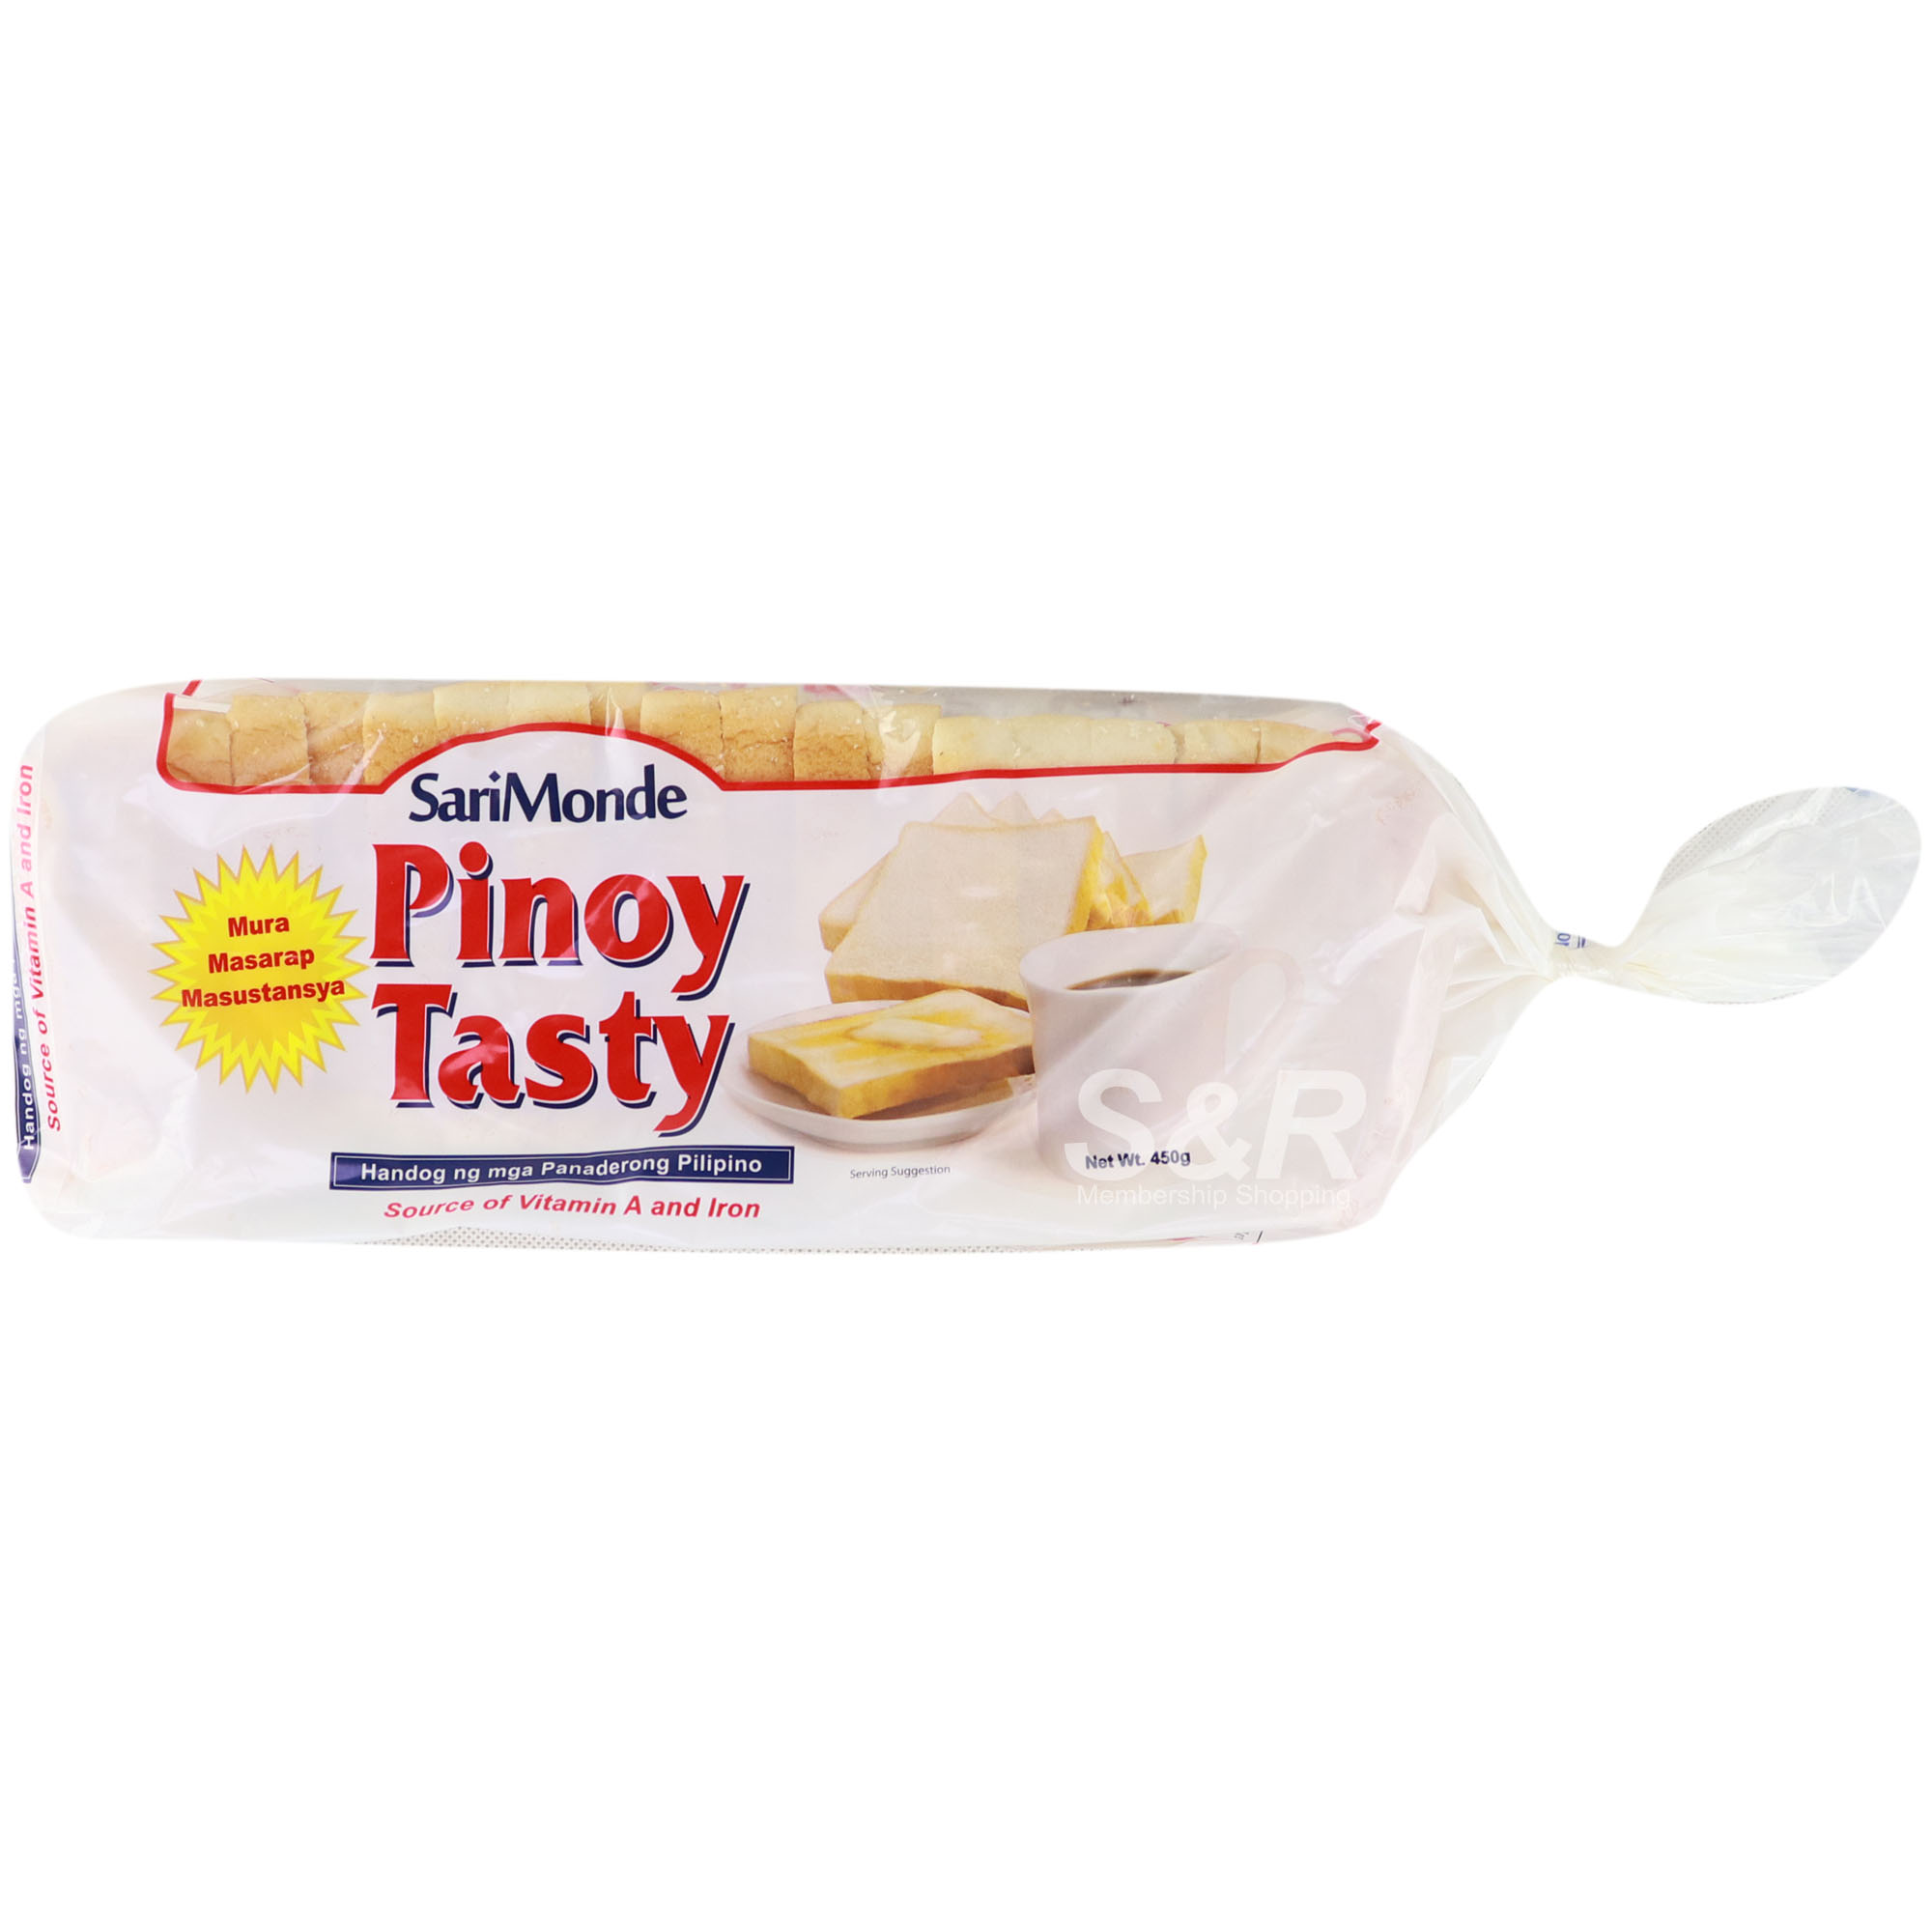 SariMonde Pinoy Tasty Bread 450g